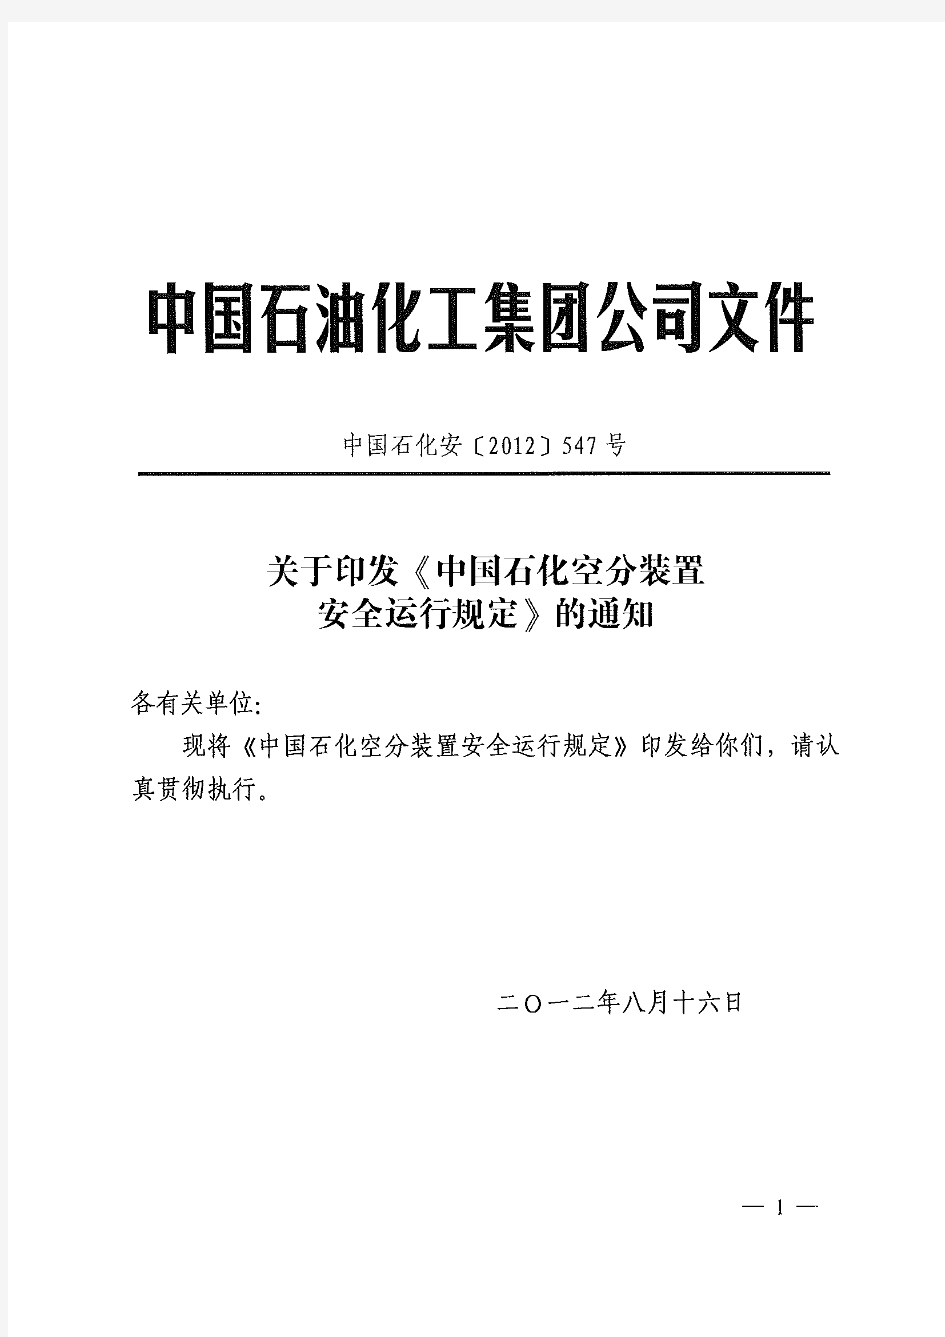 中石化安[2012]547号《中国石化空分装置安全运行规定》